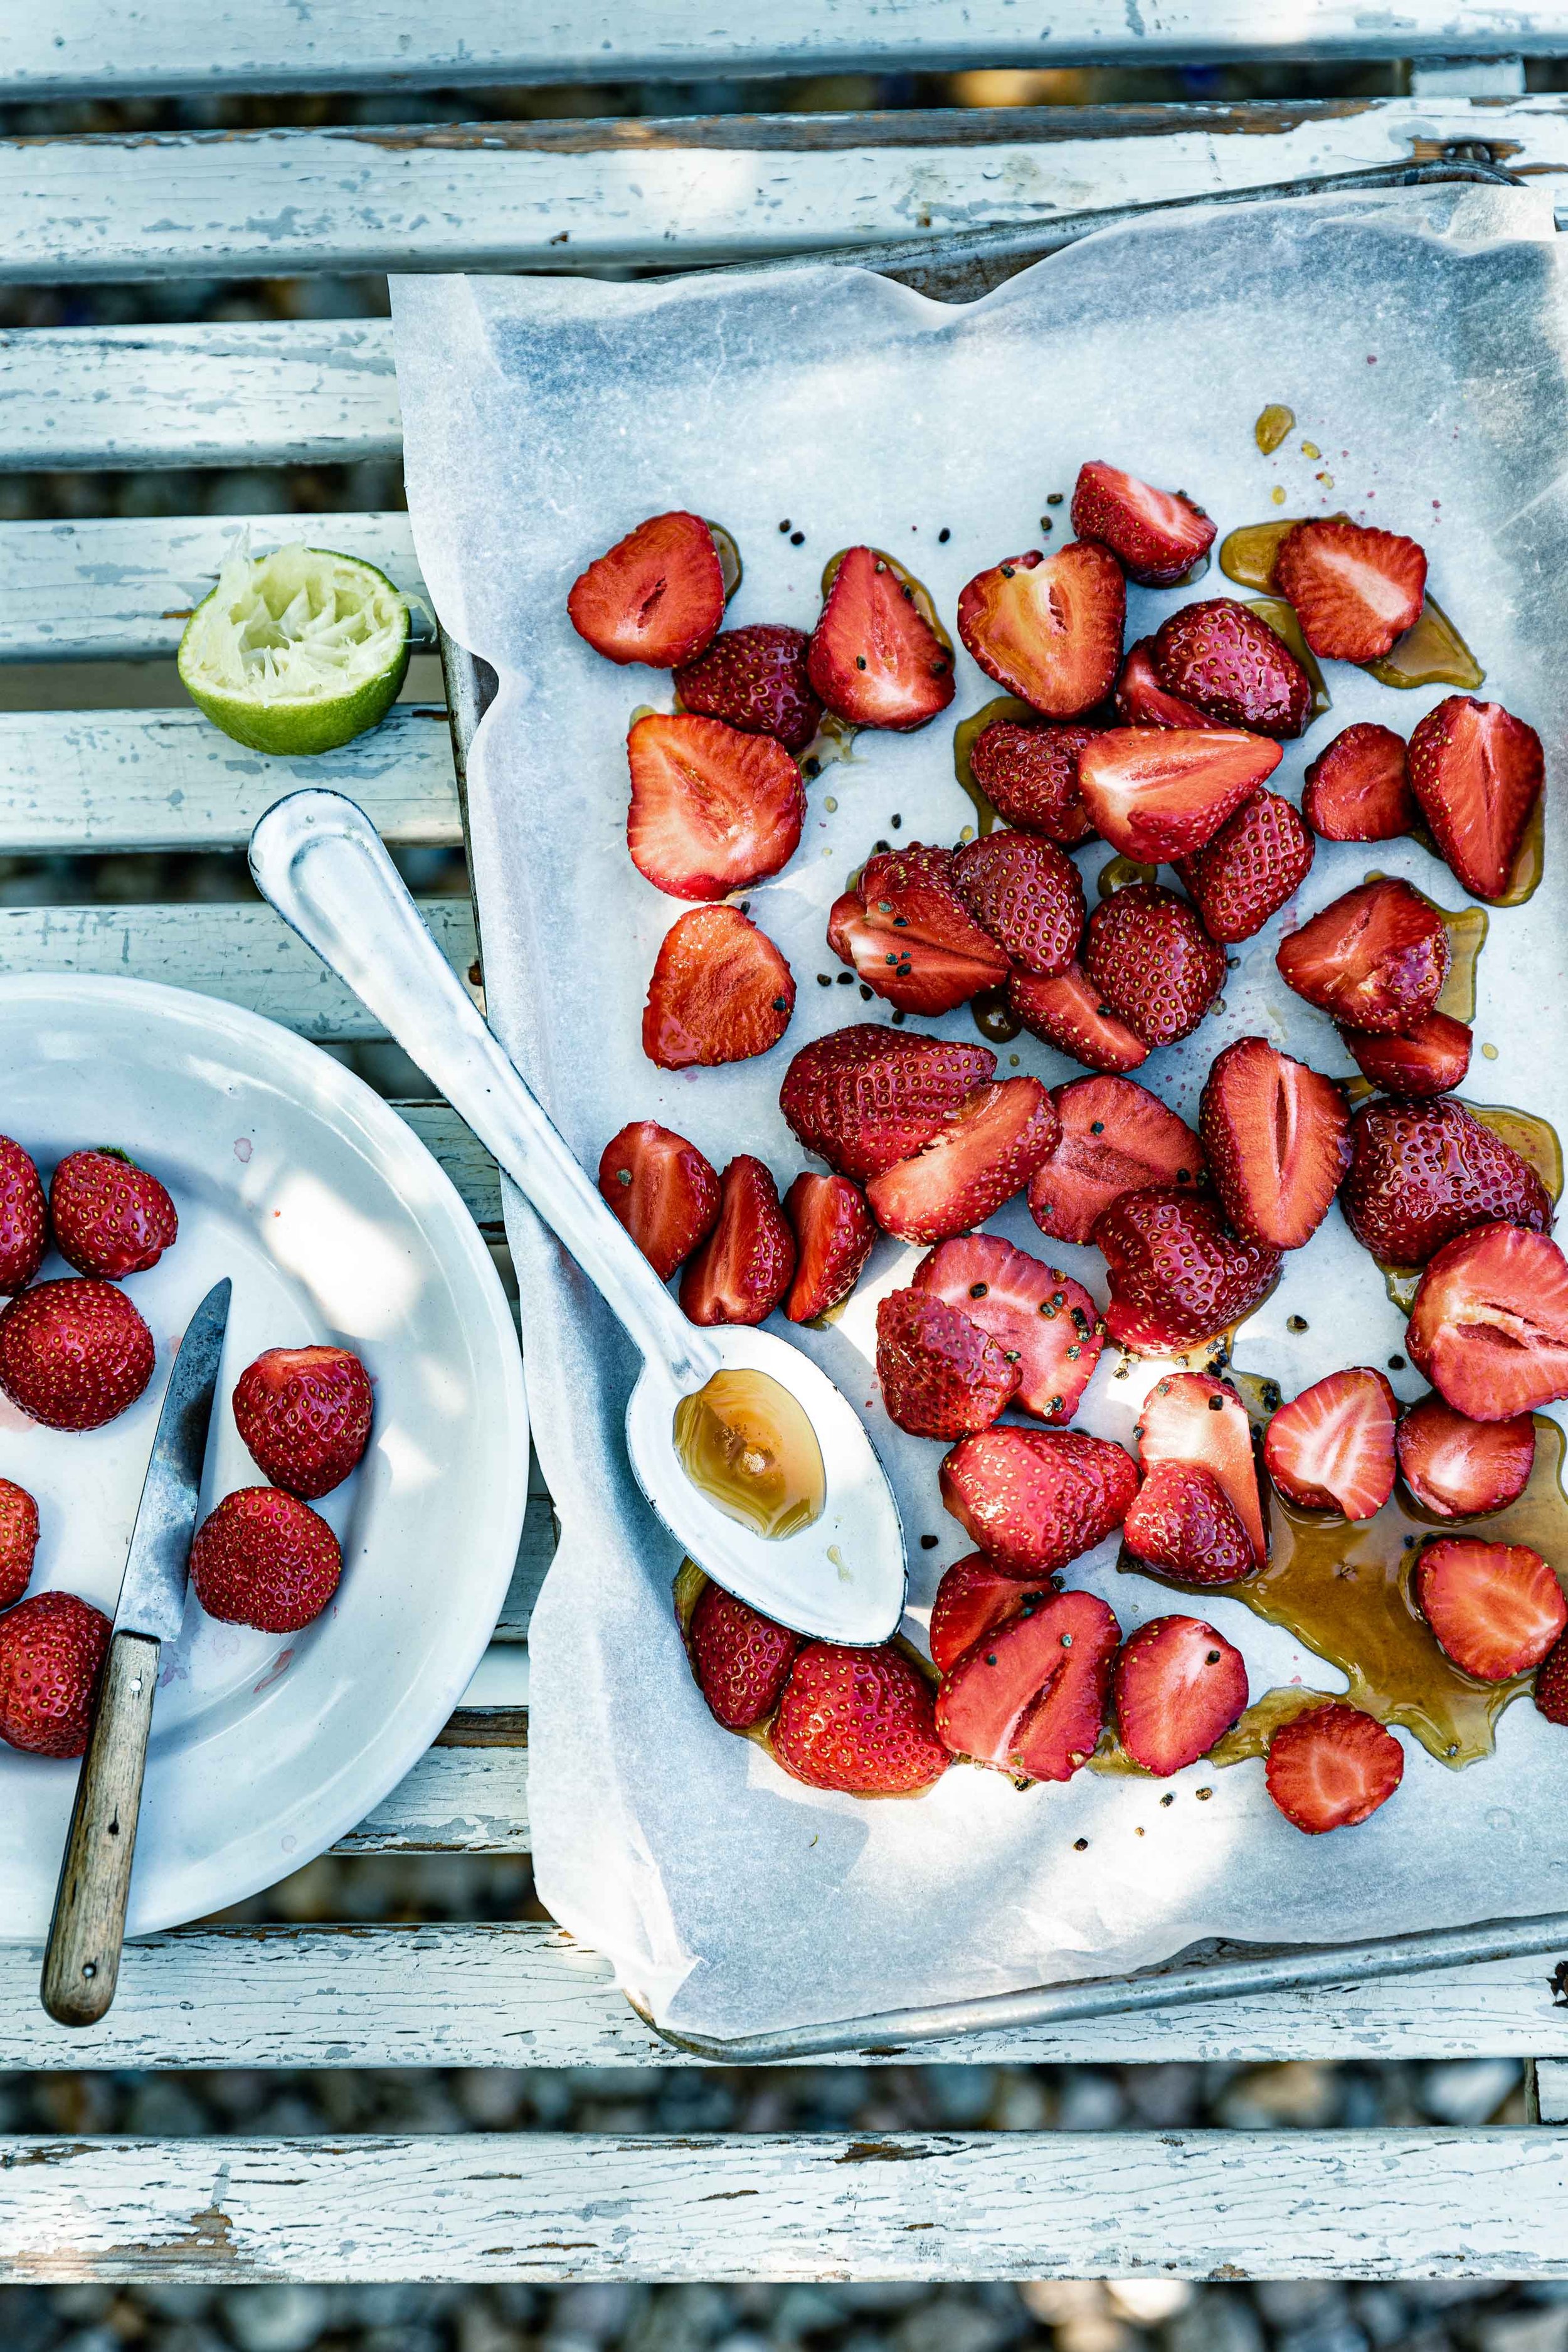 ofengebackene-erdbeeren-zubereitung-erdbeeren-rezept-veggielicious-food-fotografie_003-dt-quer.jpg